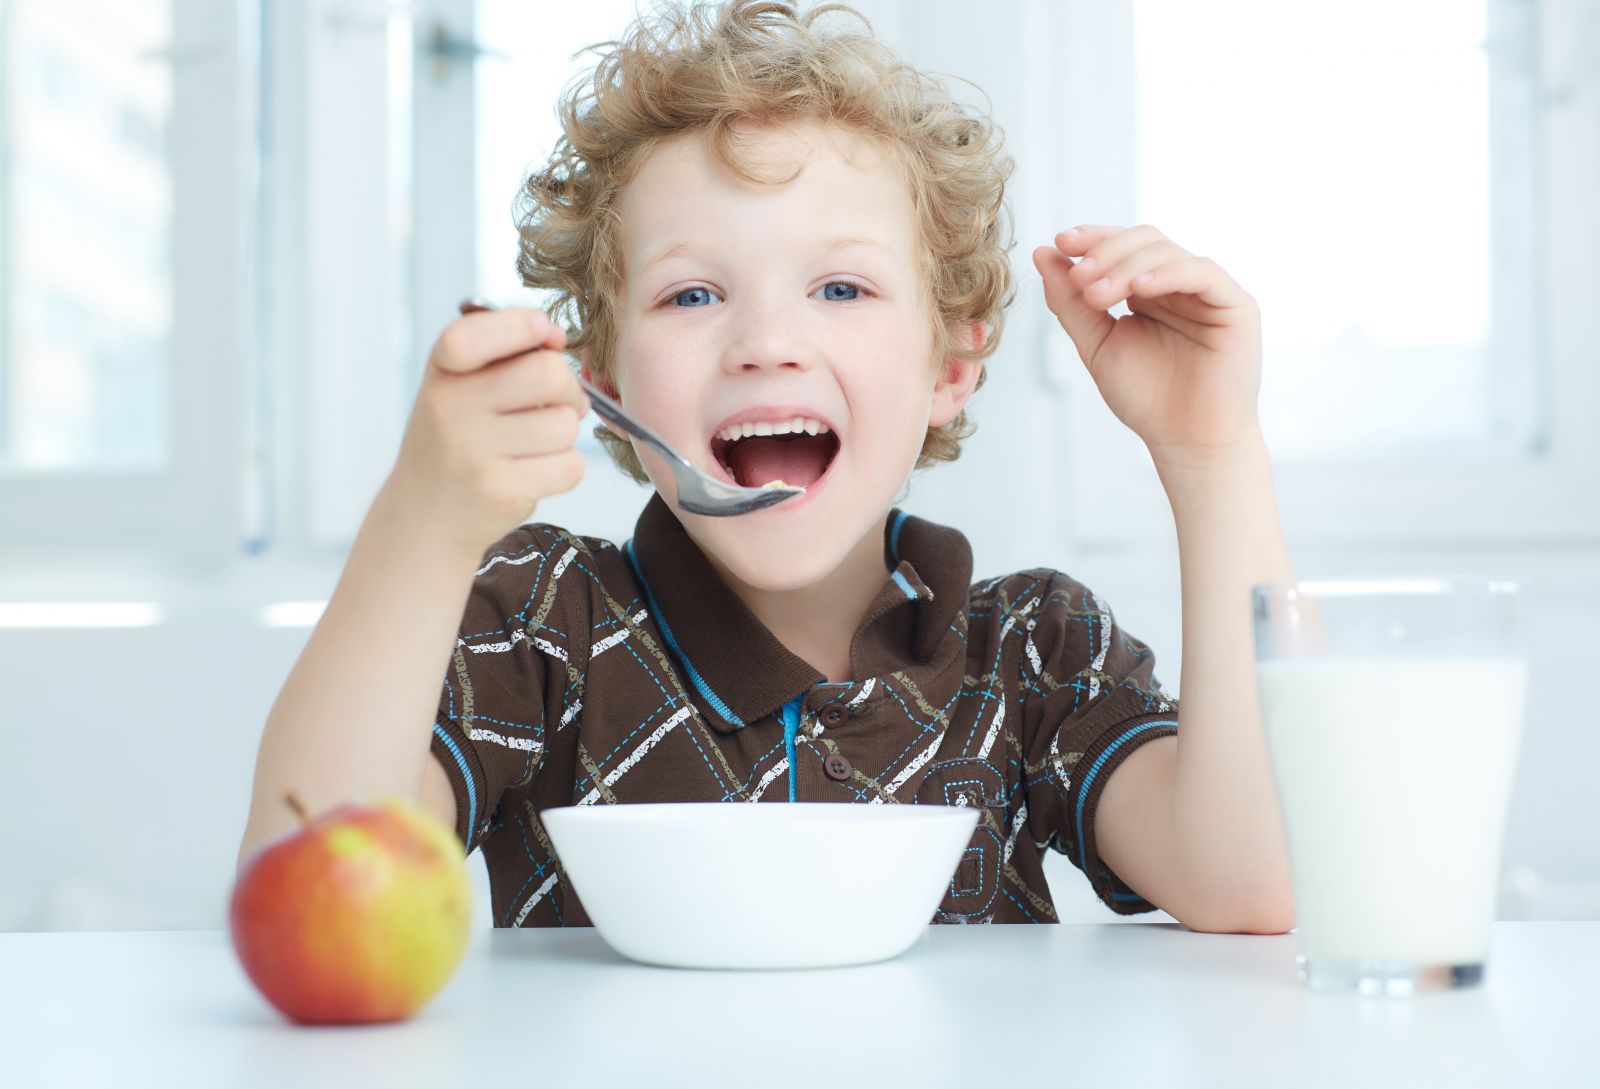 A young boy enjoying breakfast